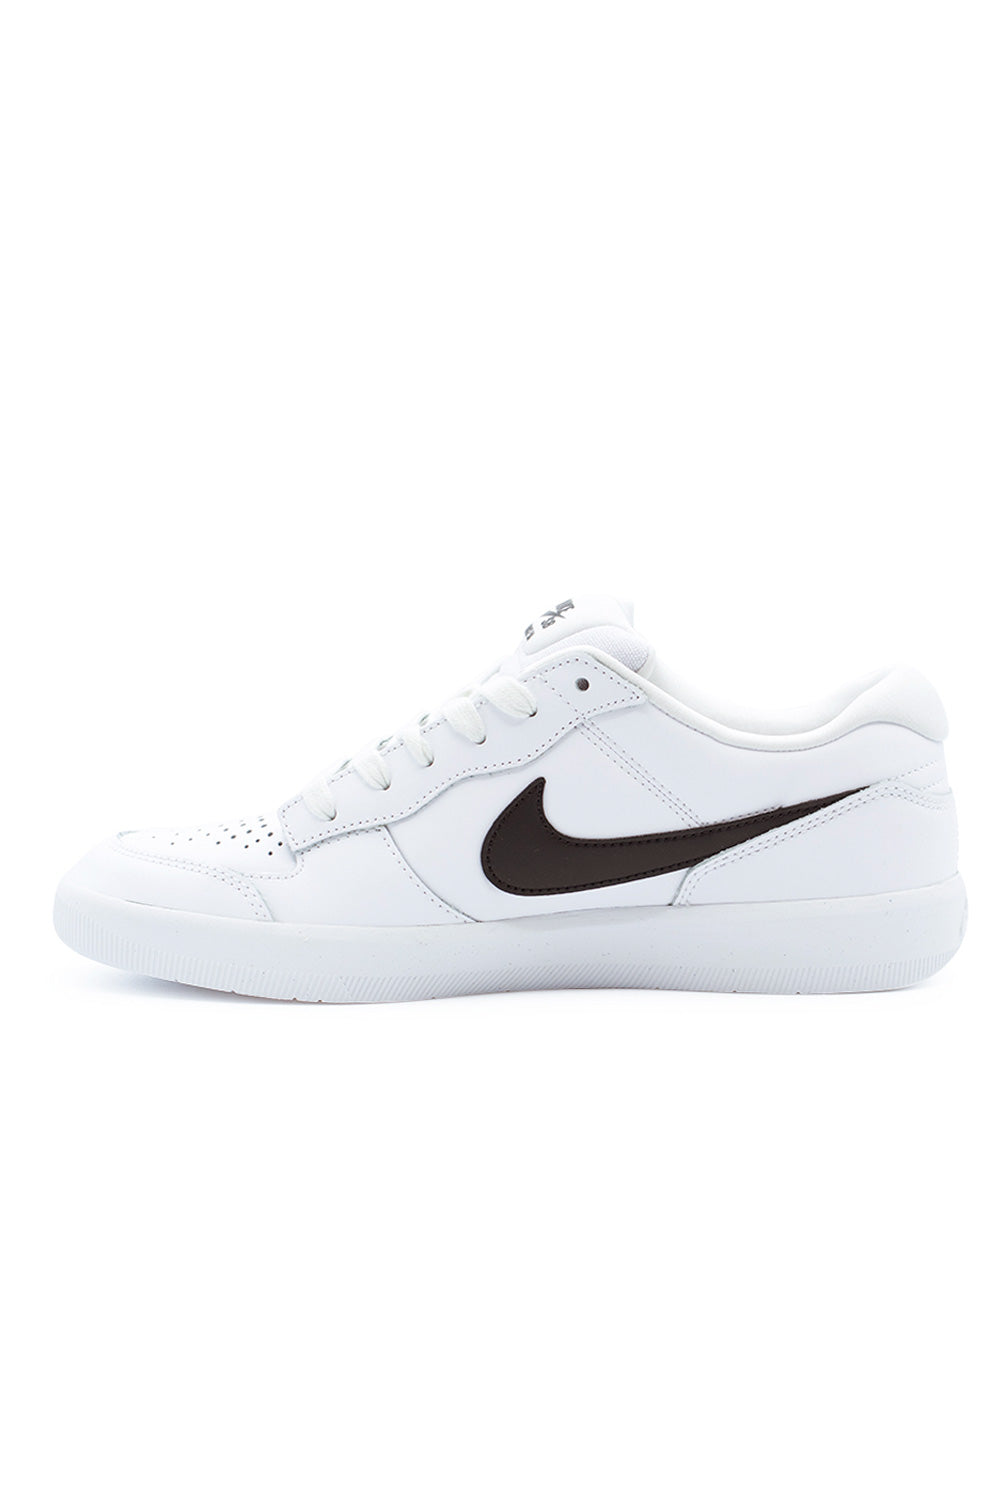 Nike SB Force 58 PRM L Shoe White / Black / White / White - BONKERS